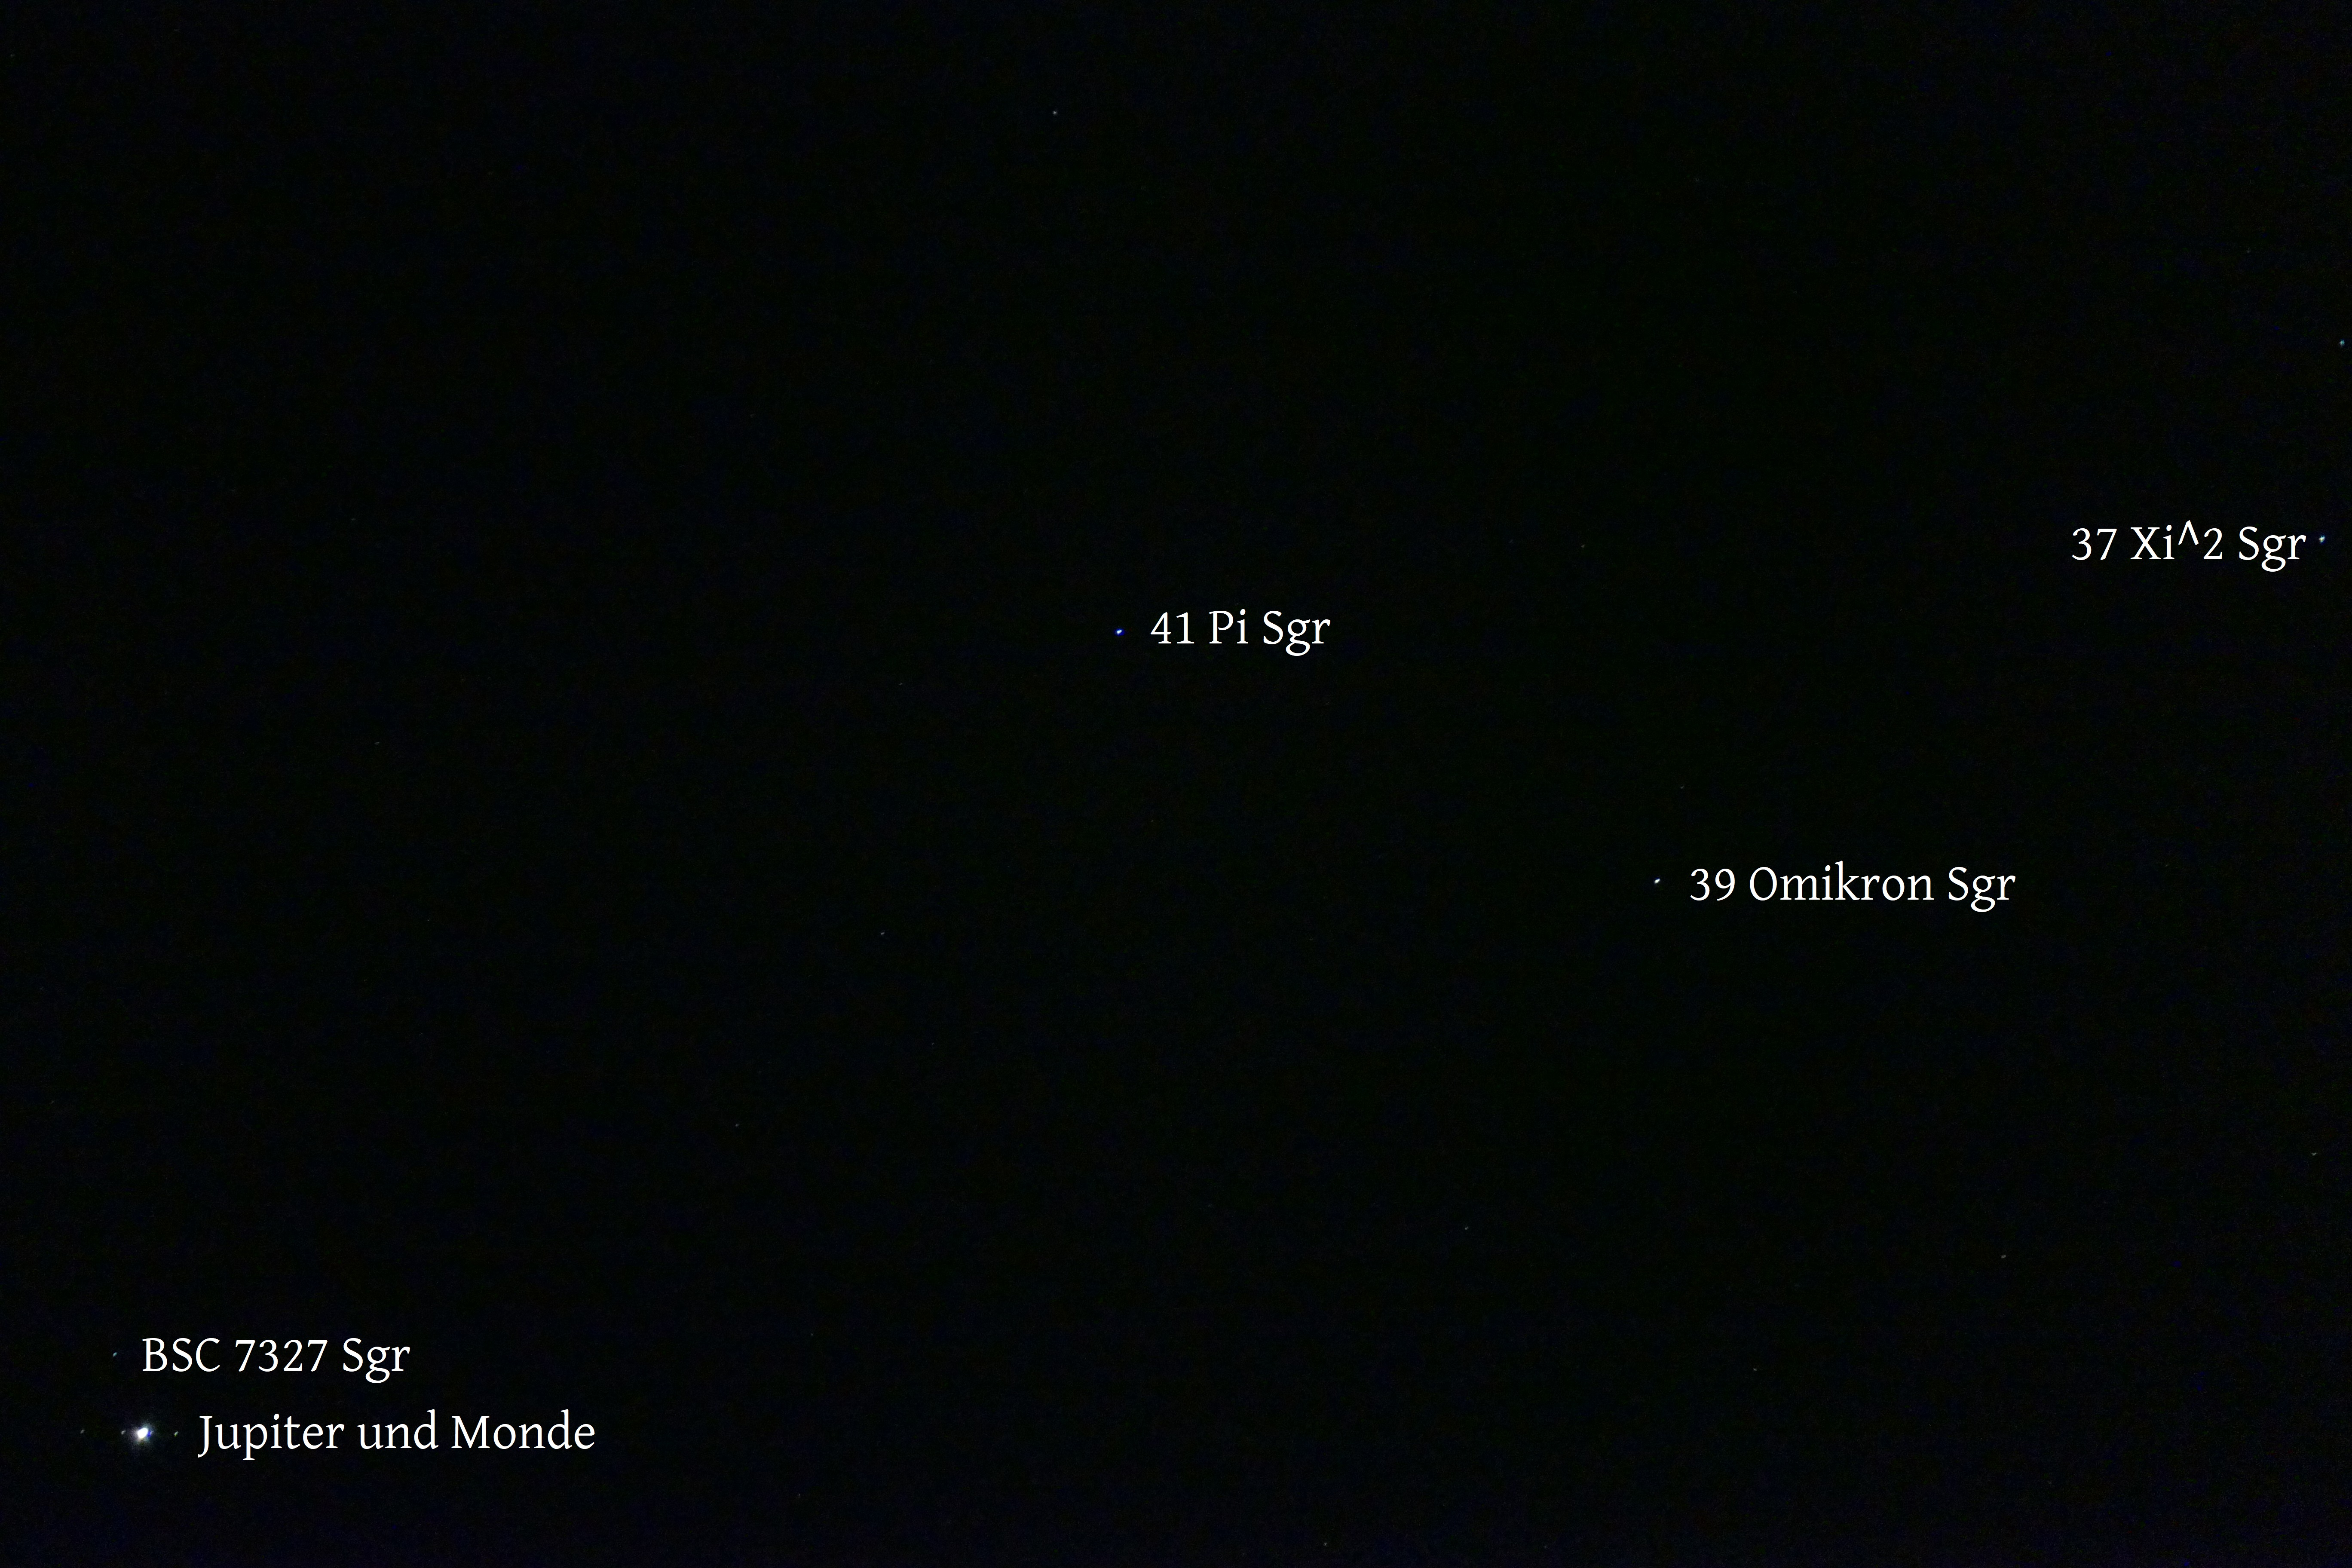 Abb. 6: Aufnahme vom 12.10.2020, 21:34 (wie Bild (d) aus Abb. 4, aber mit 400 mm Brennweite), die die Jupiter-Position im Sternbild Schütze mit den Sgr-Hintergrundsternen zeigt (Sgr = Sagittarius = Schütze).